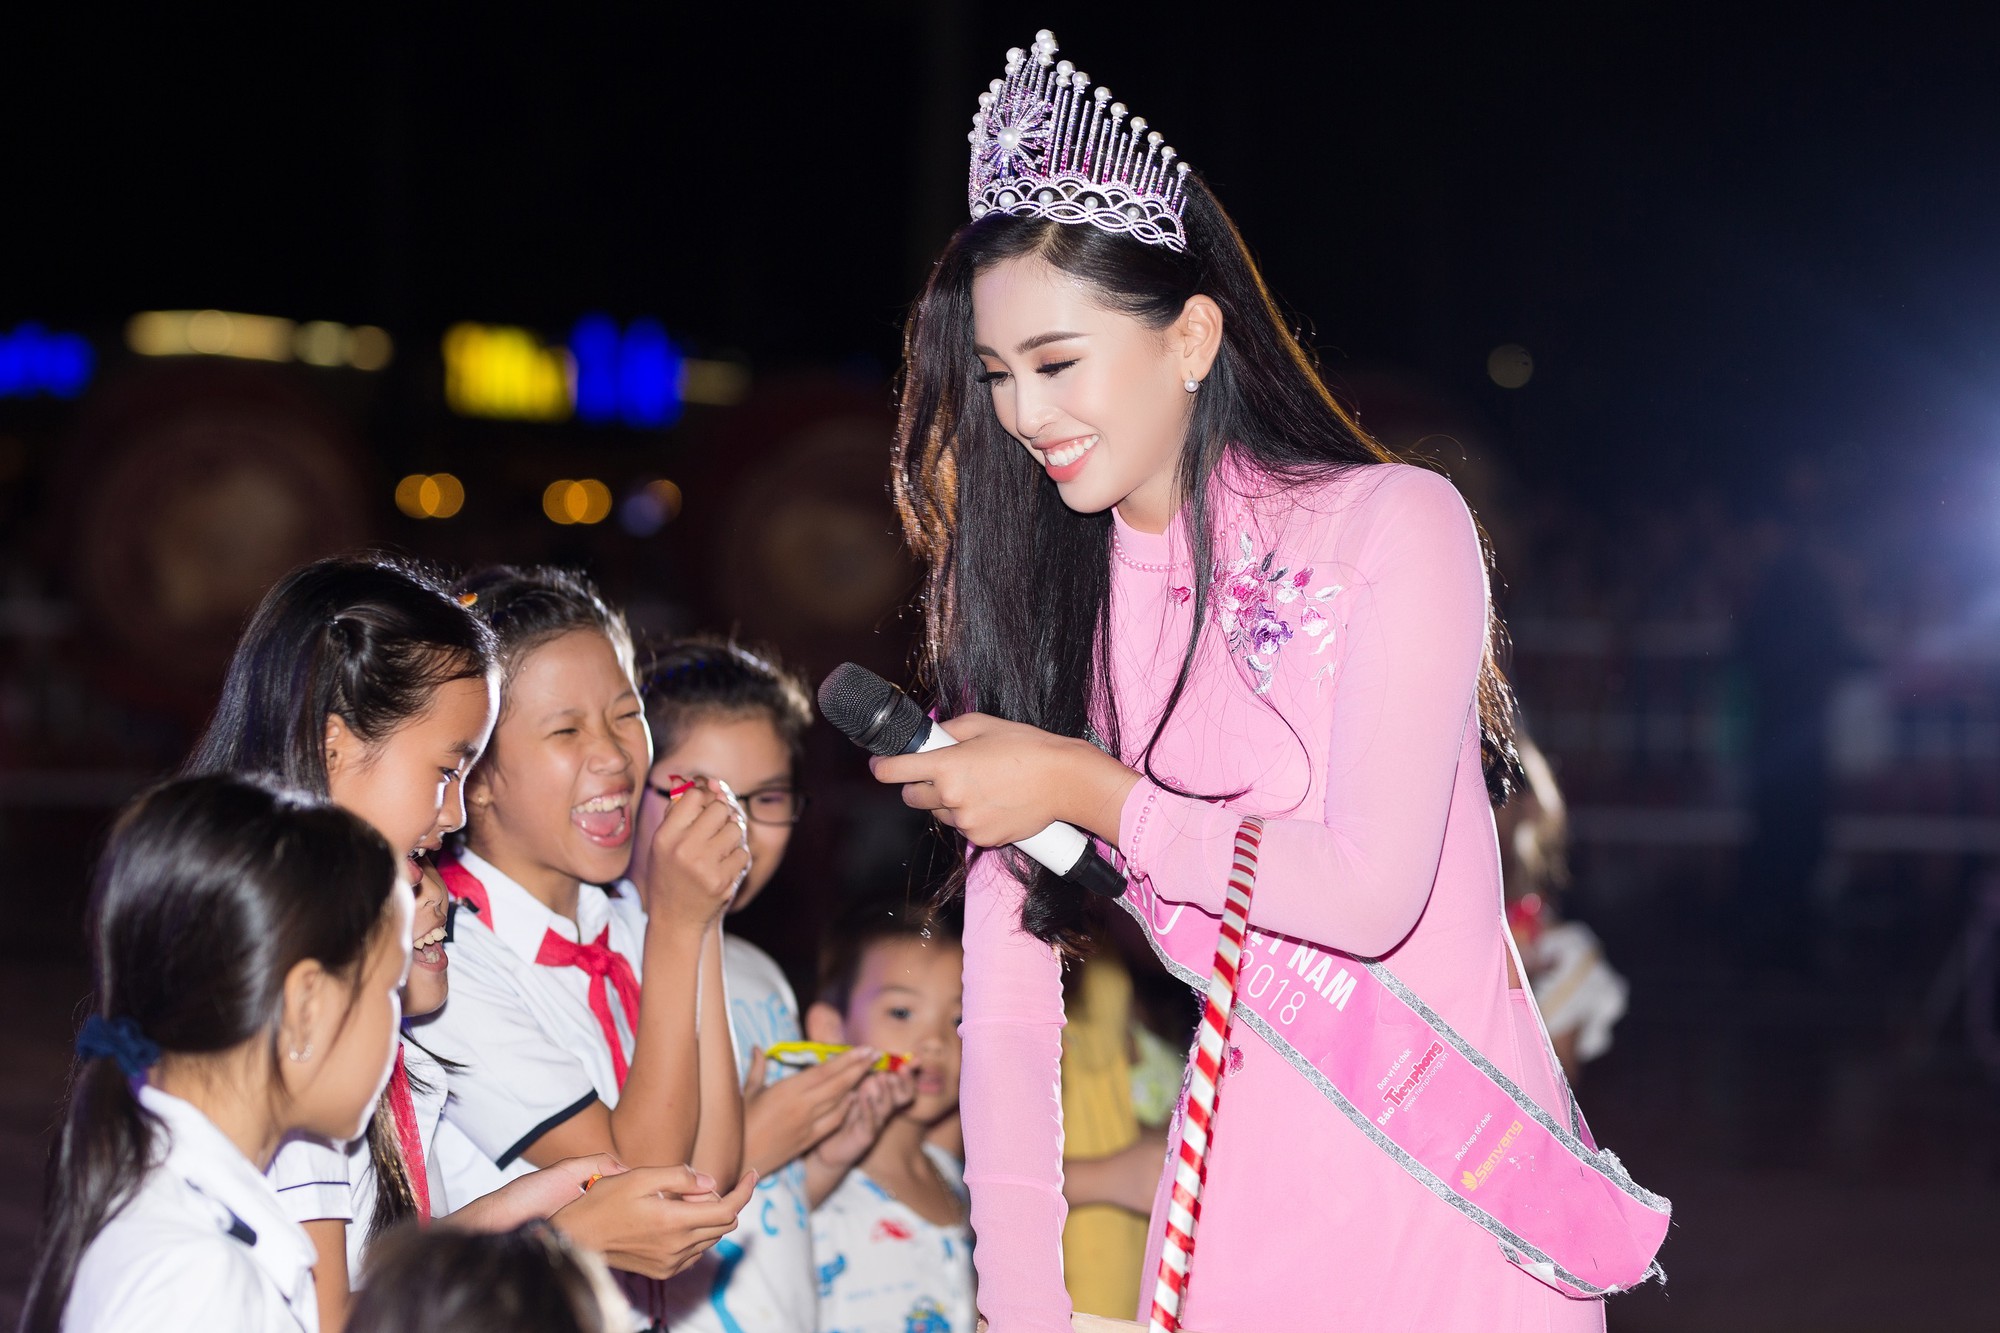 Xuất hiện với diện mạo xinh đẹp, Tân Hoa hậu Tiểu Vy vẫn bị soi đội vương miện cong vênh - Ảnh 2.